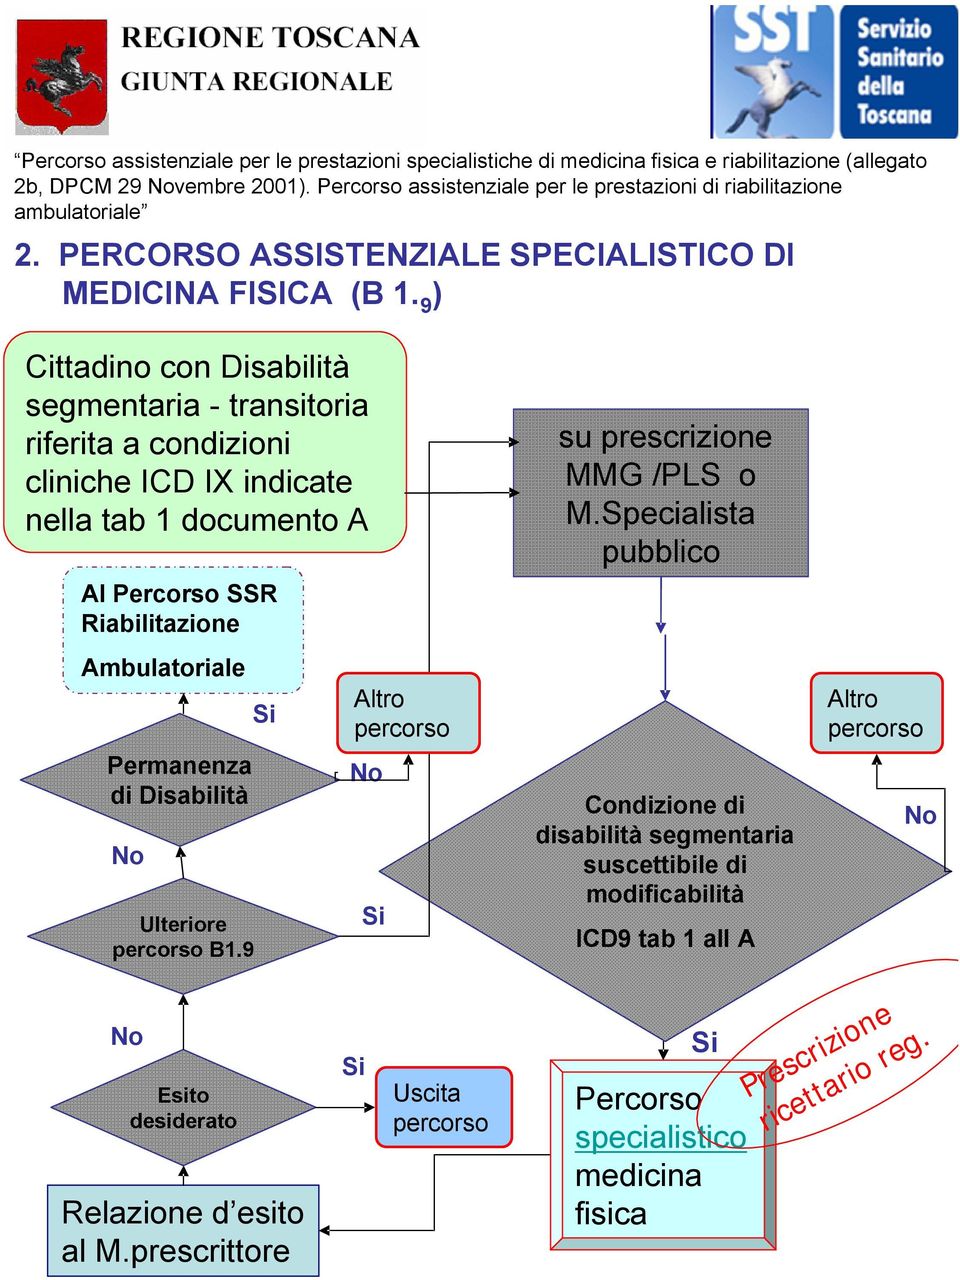 9 ) Cittadino con Disabilità segmentaria - transitoria riferita a condizioni cliniche ICD IX indicate nella tab 1 documento A Al Percorso SSR Riabilitazione Ambulatoriale Permanenza di Disabilità No